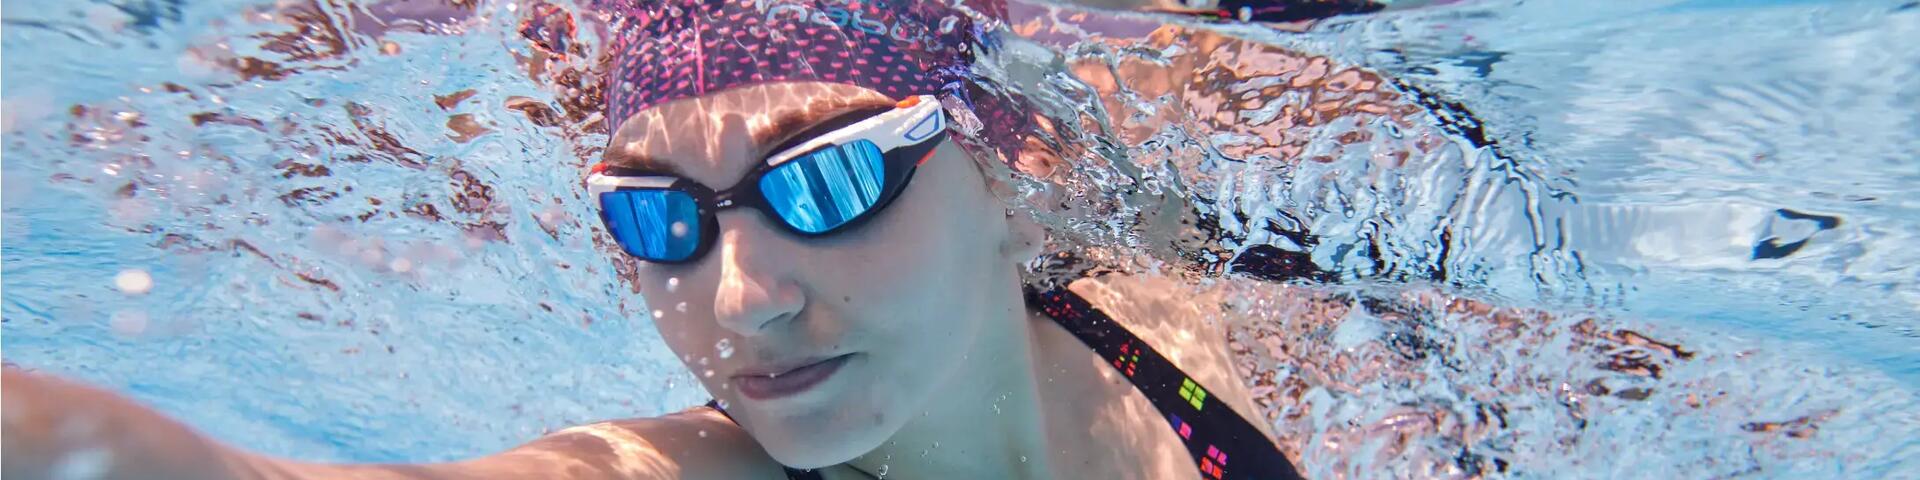 kobieta płynąca w czepku i okularach pływackich pod wodą